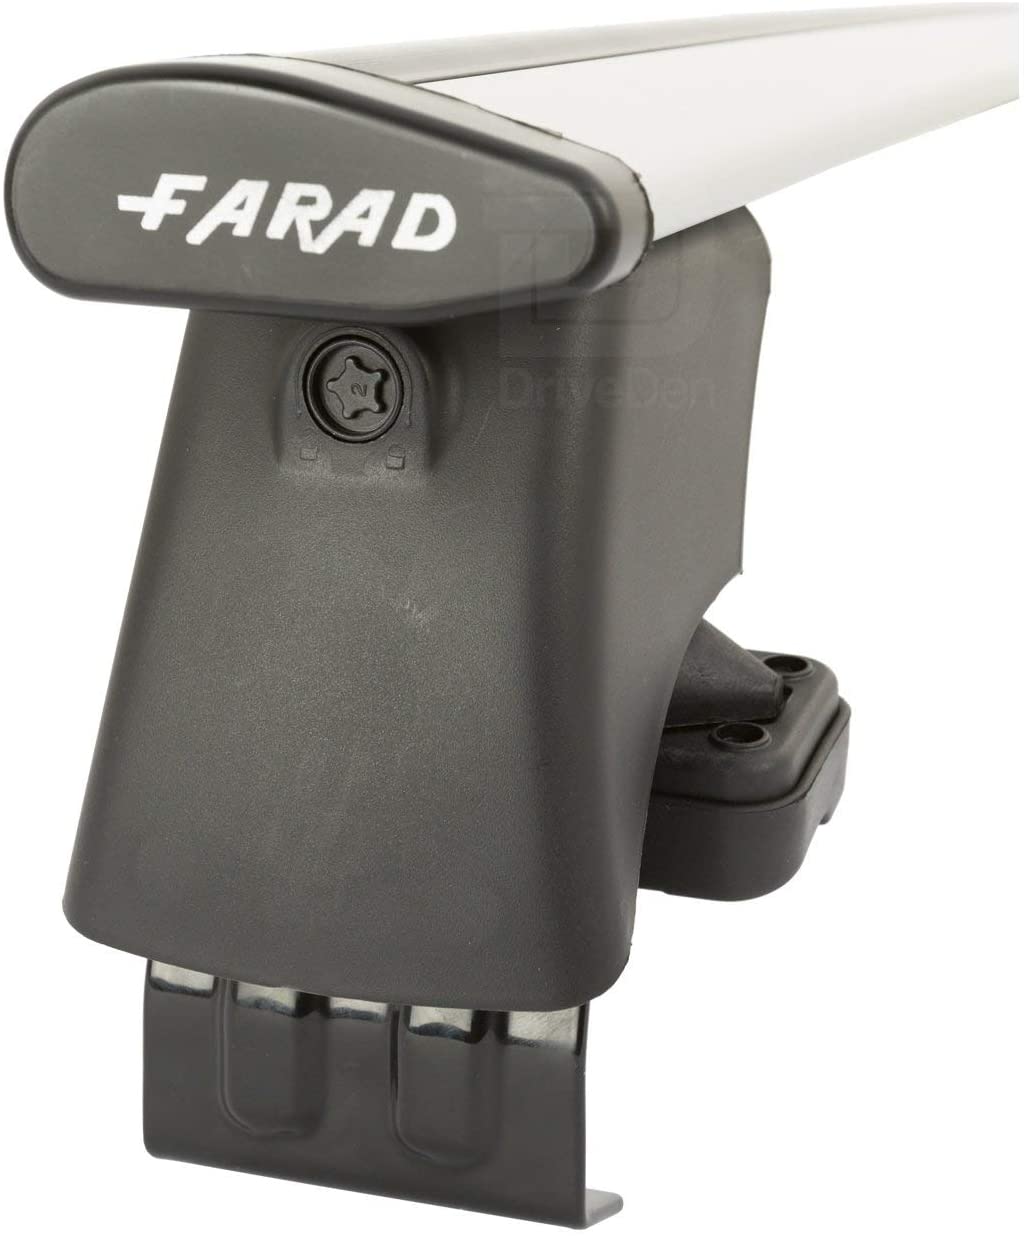 FARAD-Kit H2 per barre portatutto - Audi A4 Sedan 2016> (senza corrimano)